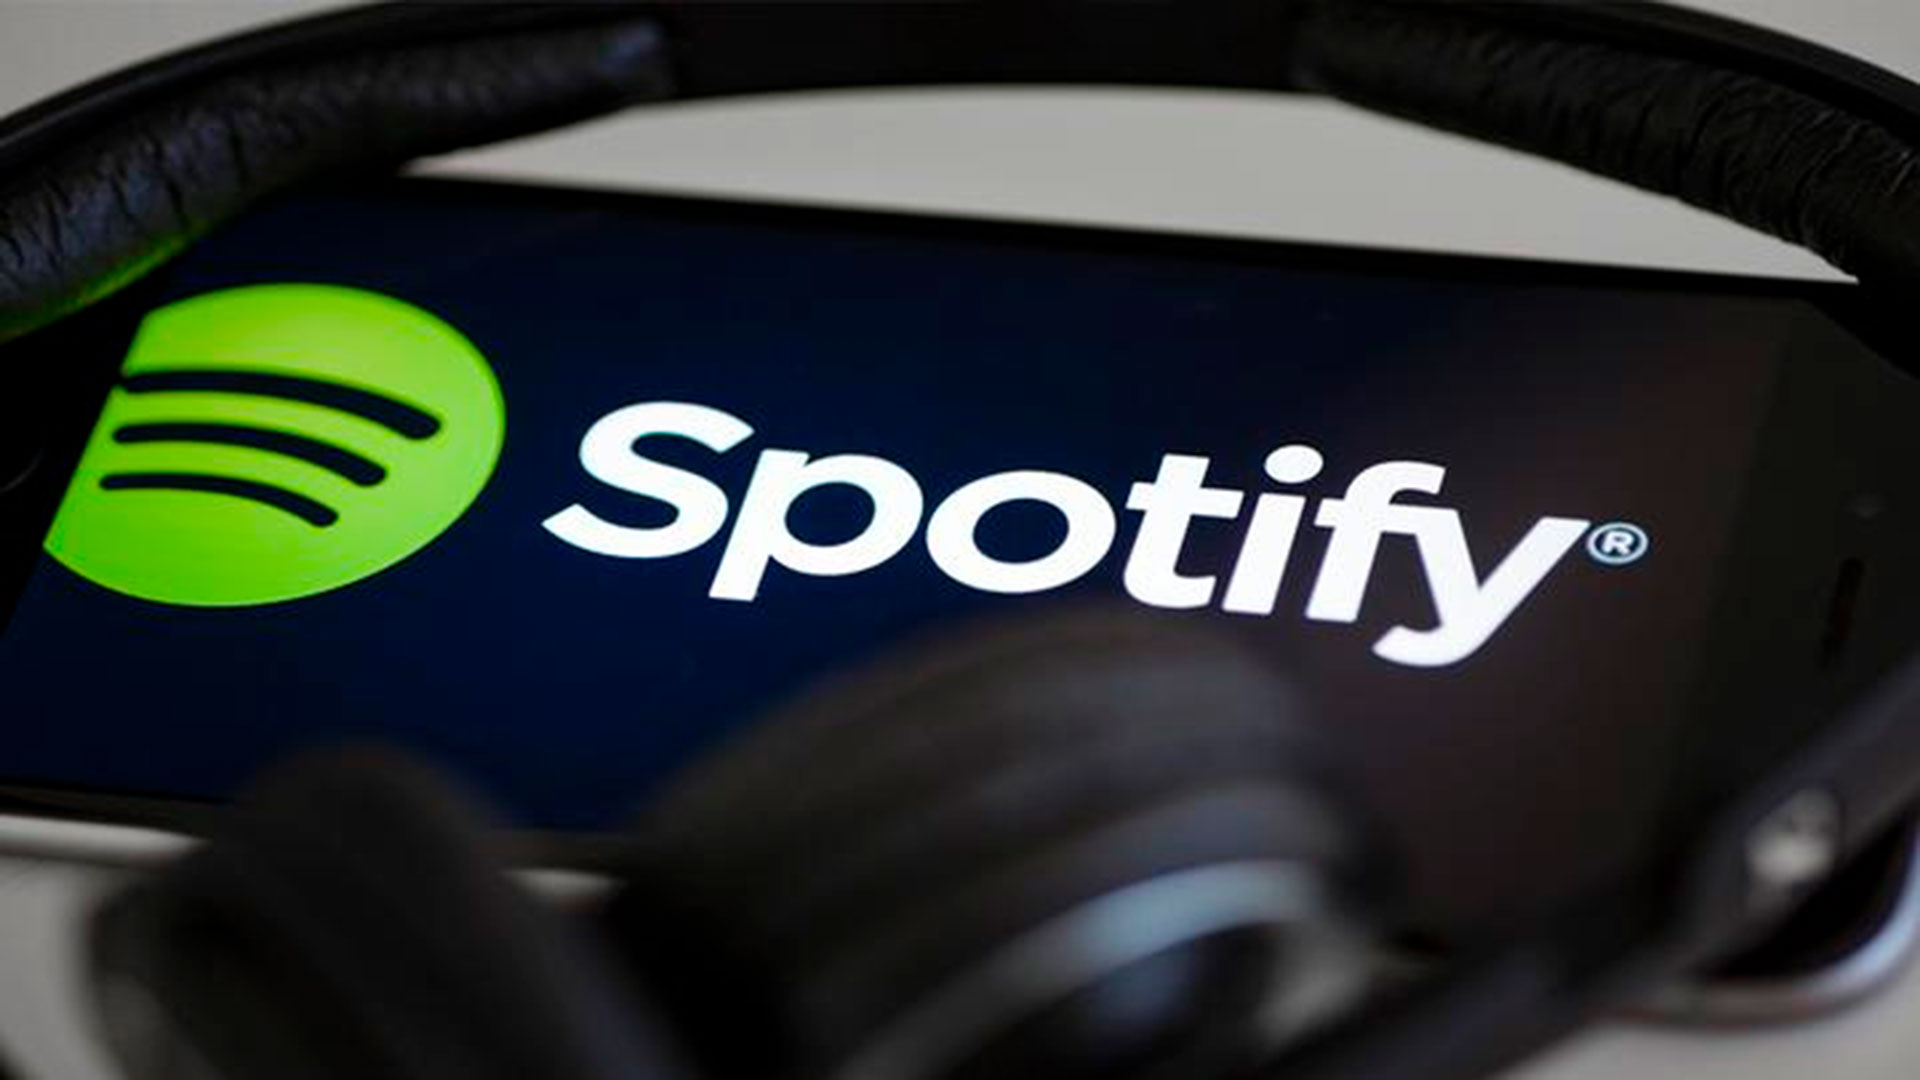 Spotify se ha convertido en una de las plataformas por streaming más competitivas. (Spotify)